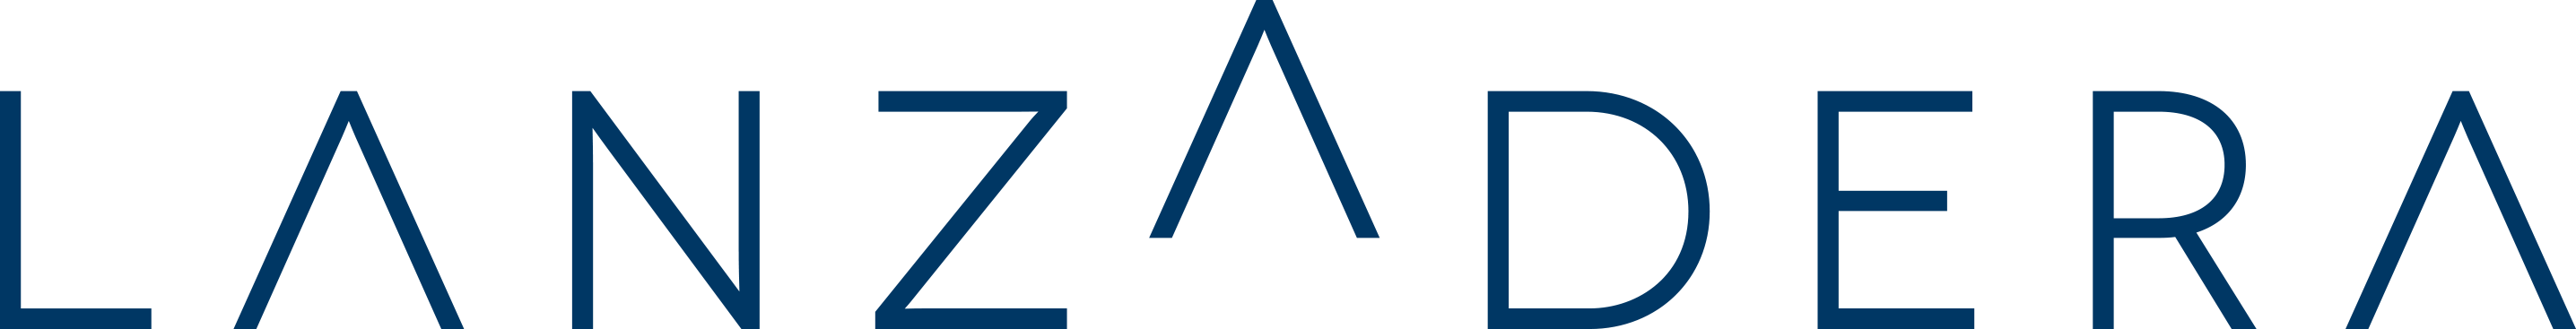 home-lanzadera-logo